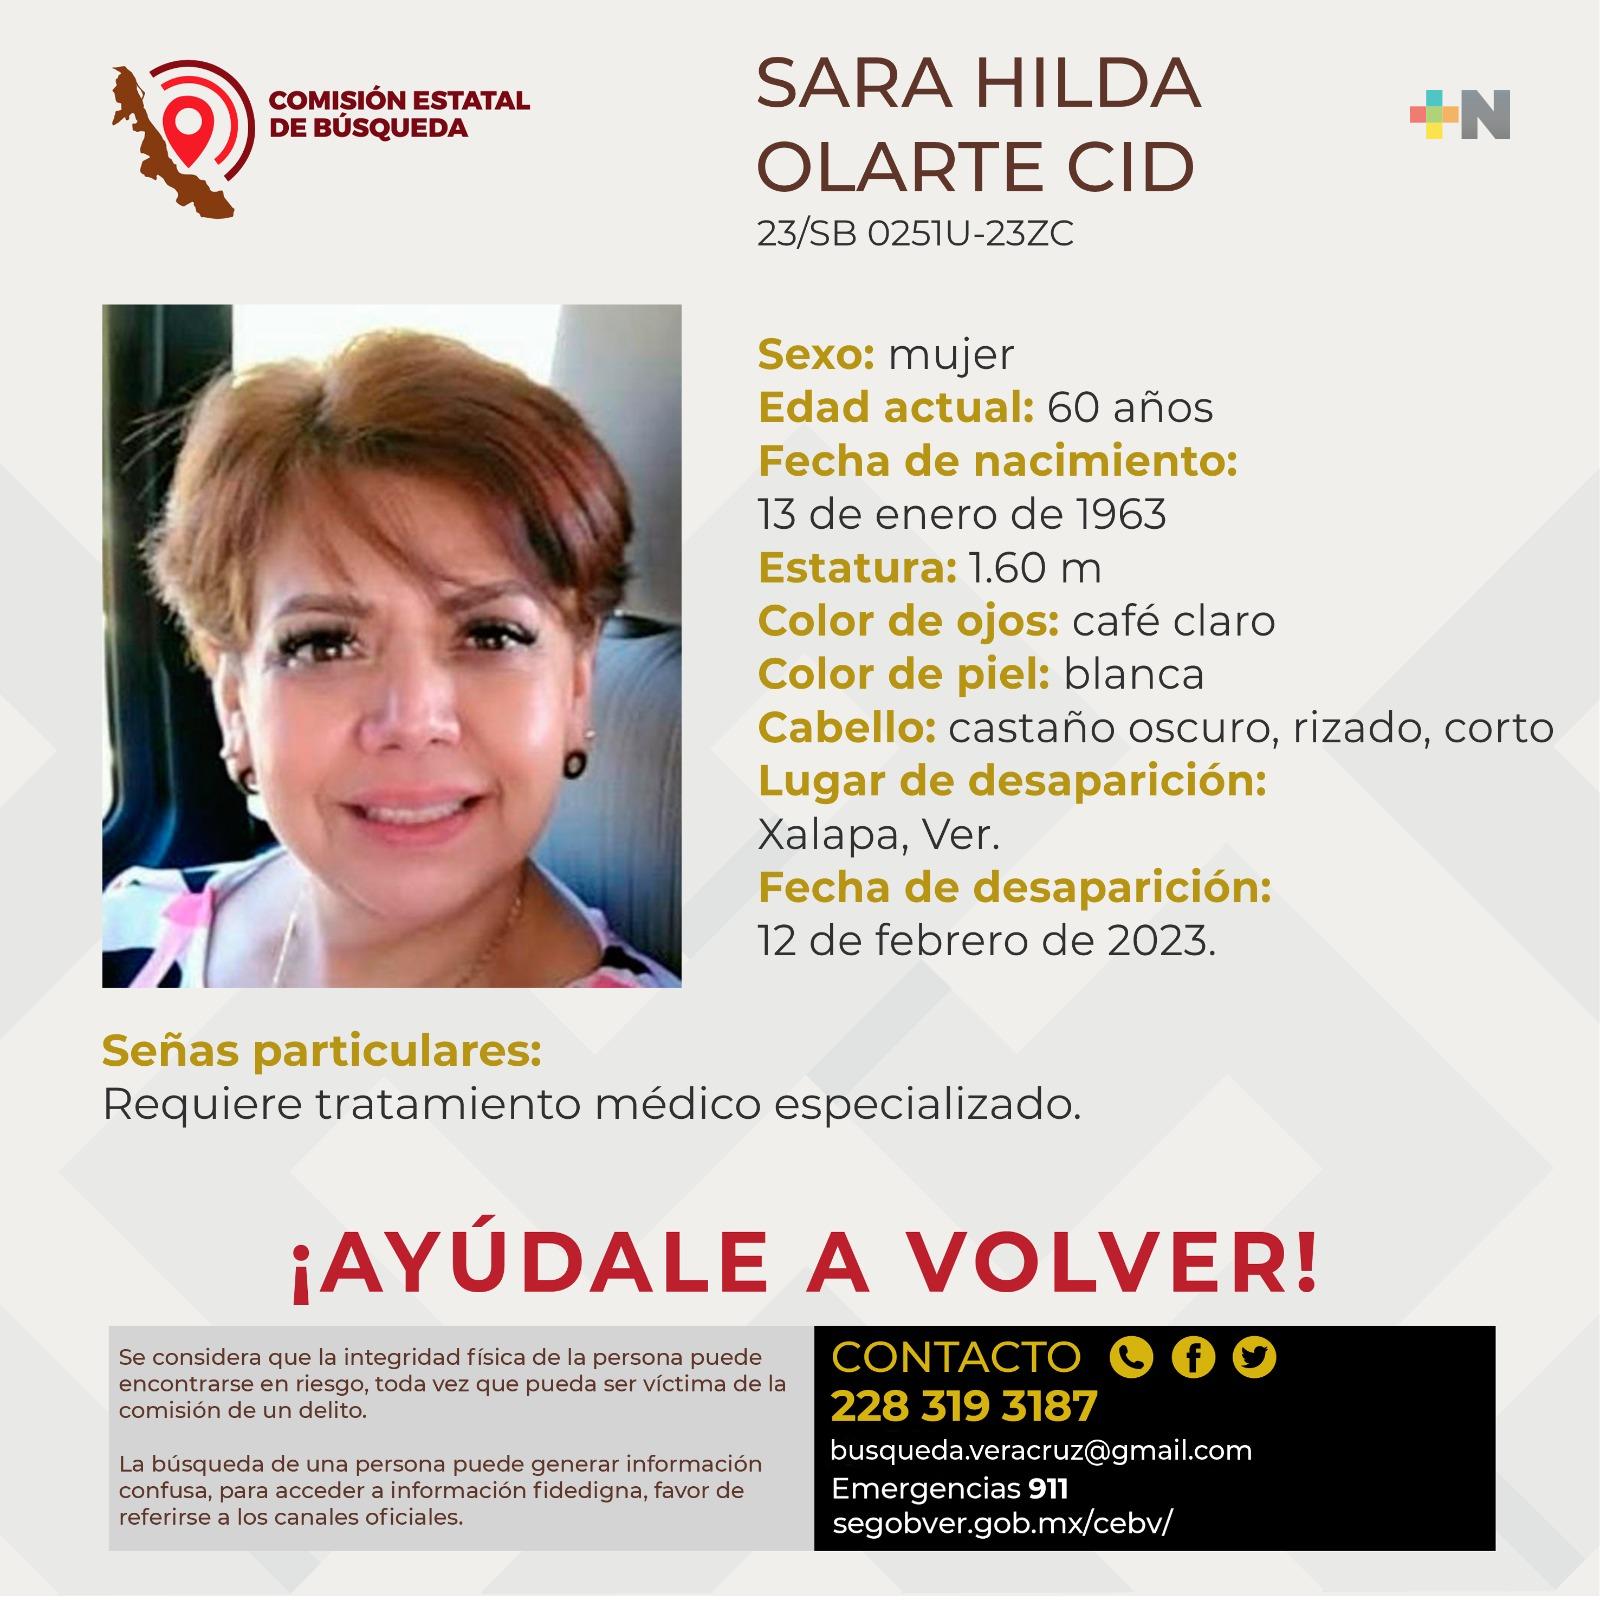 Familiares piden agilizar investigaciones por desaparición de Sara Hilda Oloarte